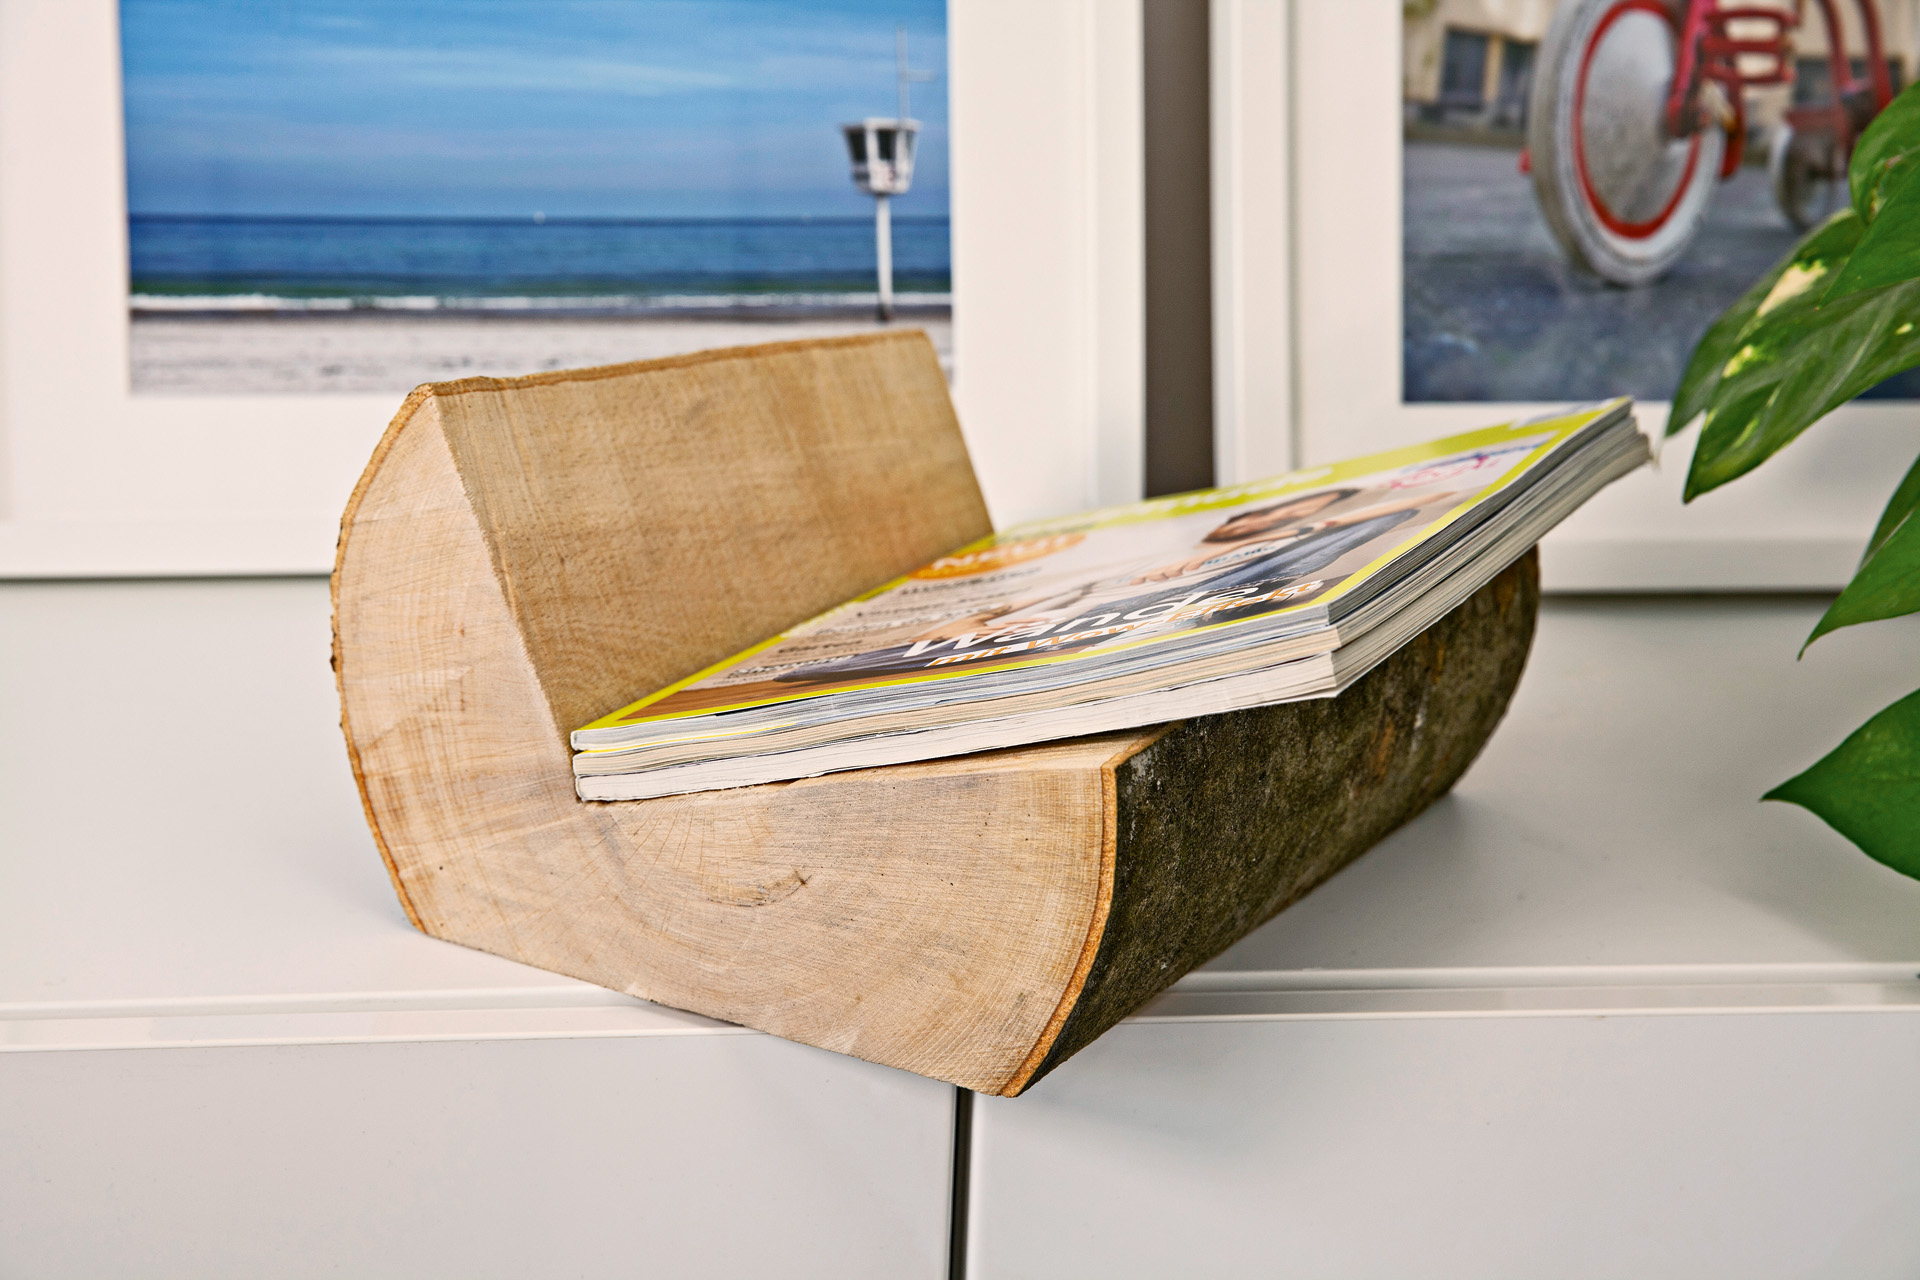 Tijdschriften in een zelfgemaakte tijdschriftenhouder uit een houtblok